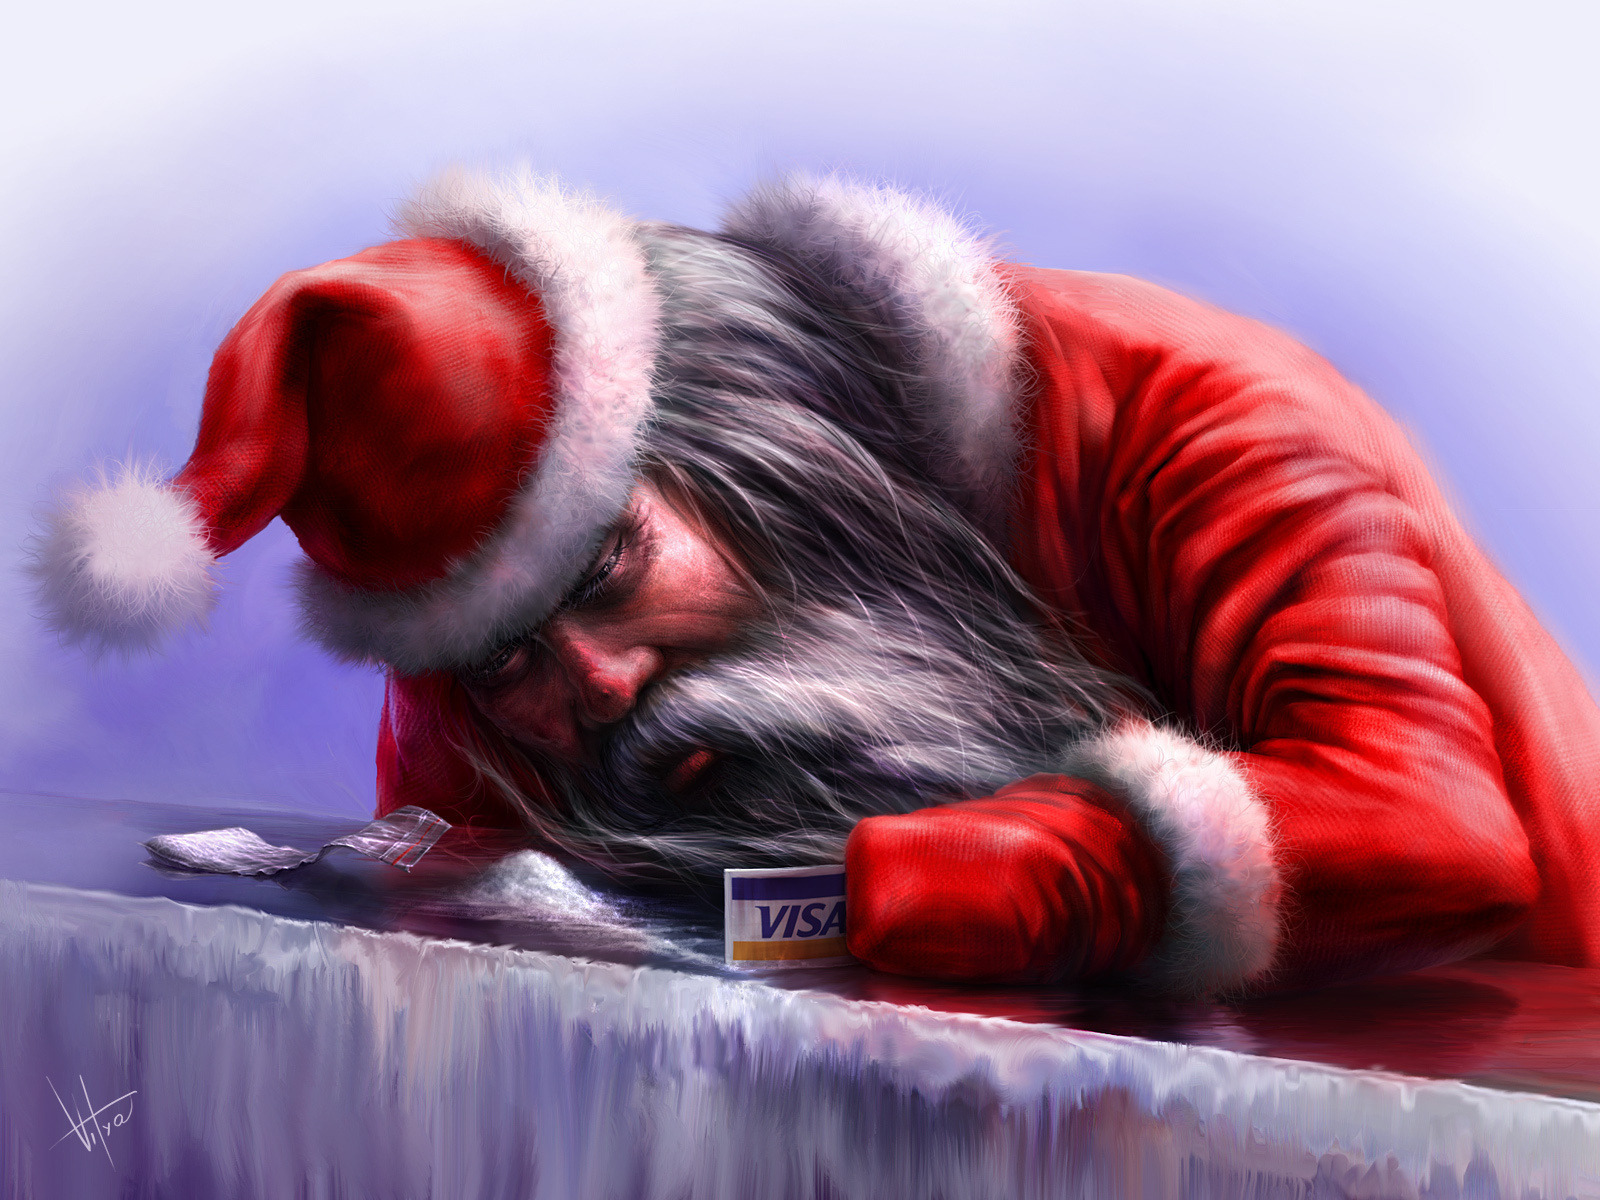 3d обои Дед мороз нюхает снег собирая его карточкой виза как кокаин (VISA)  новый год # 65642